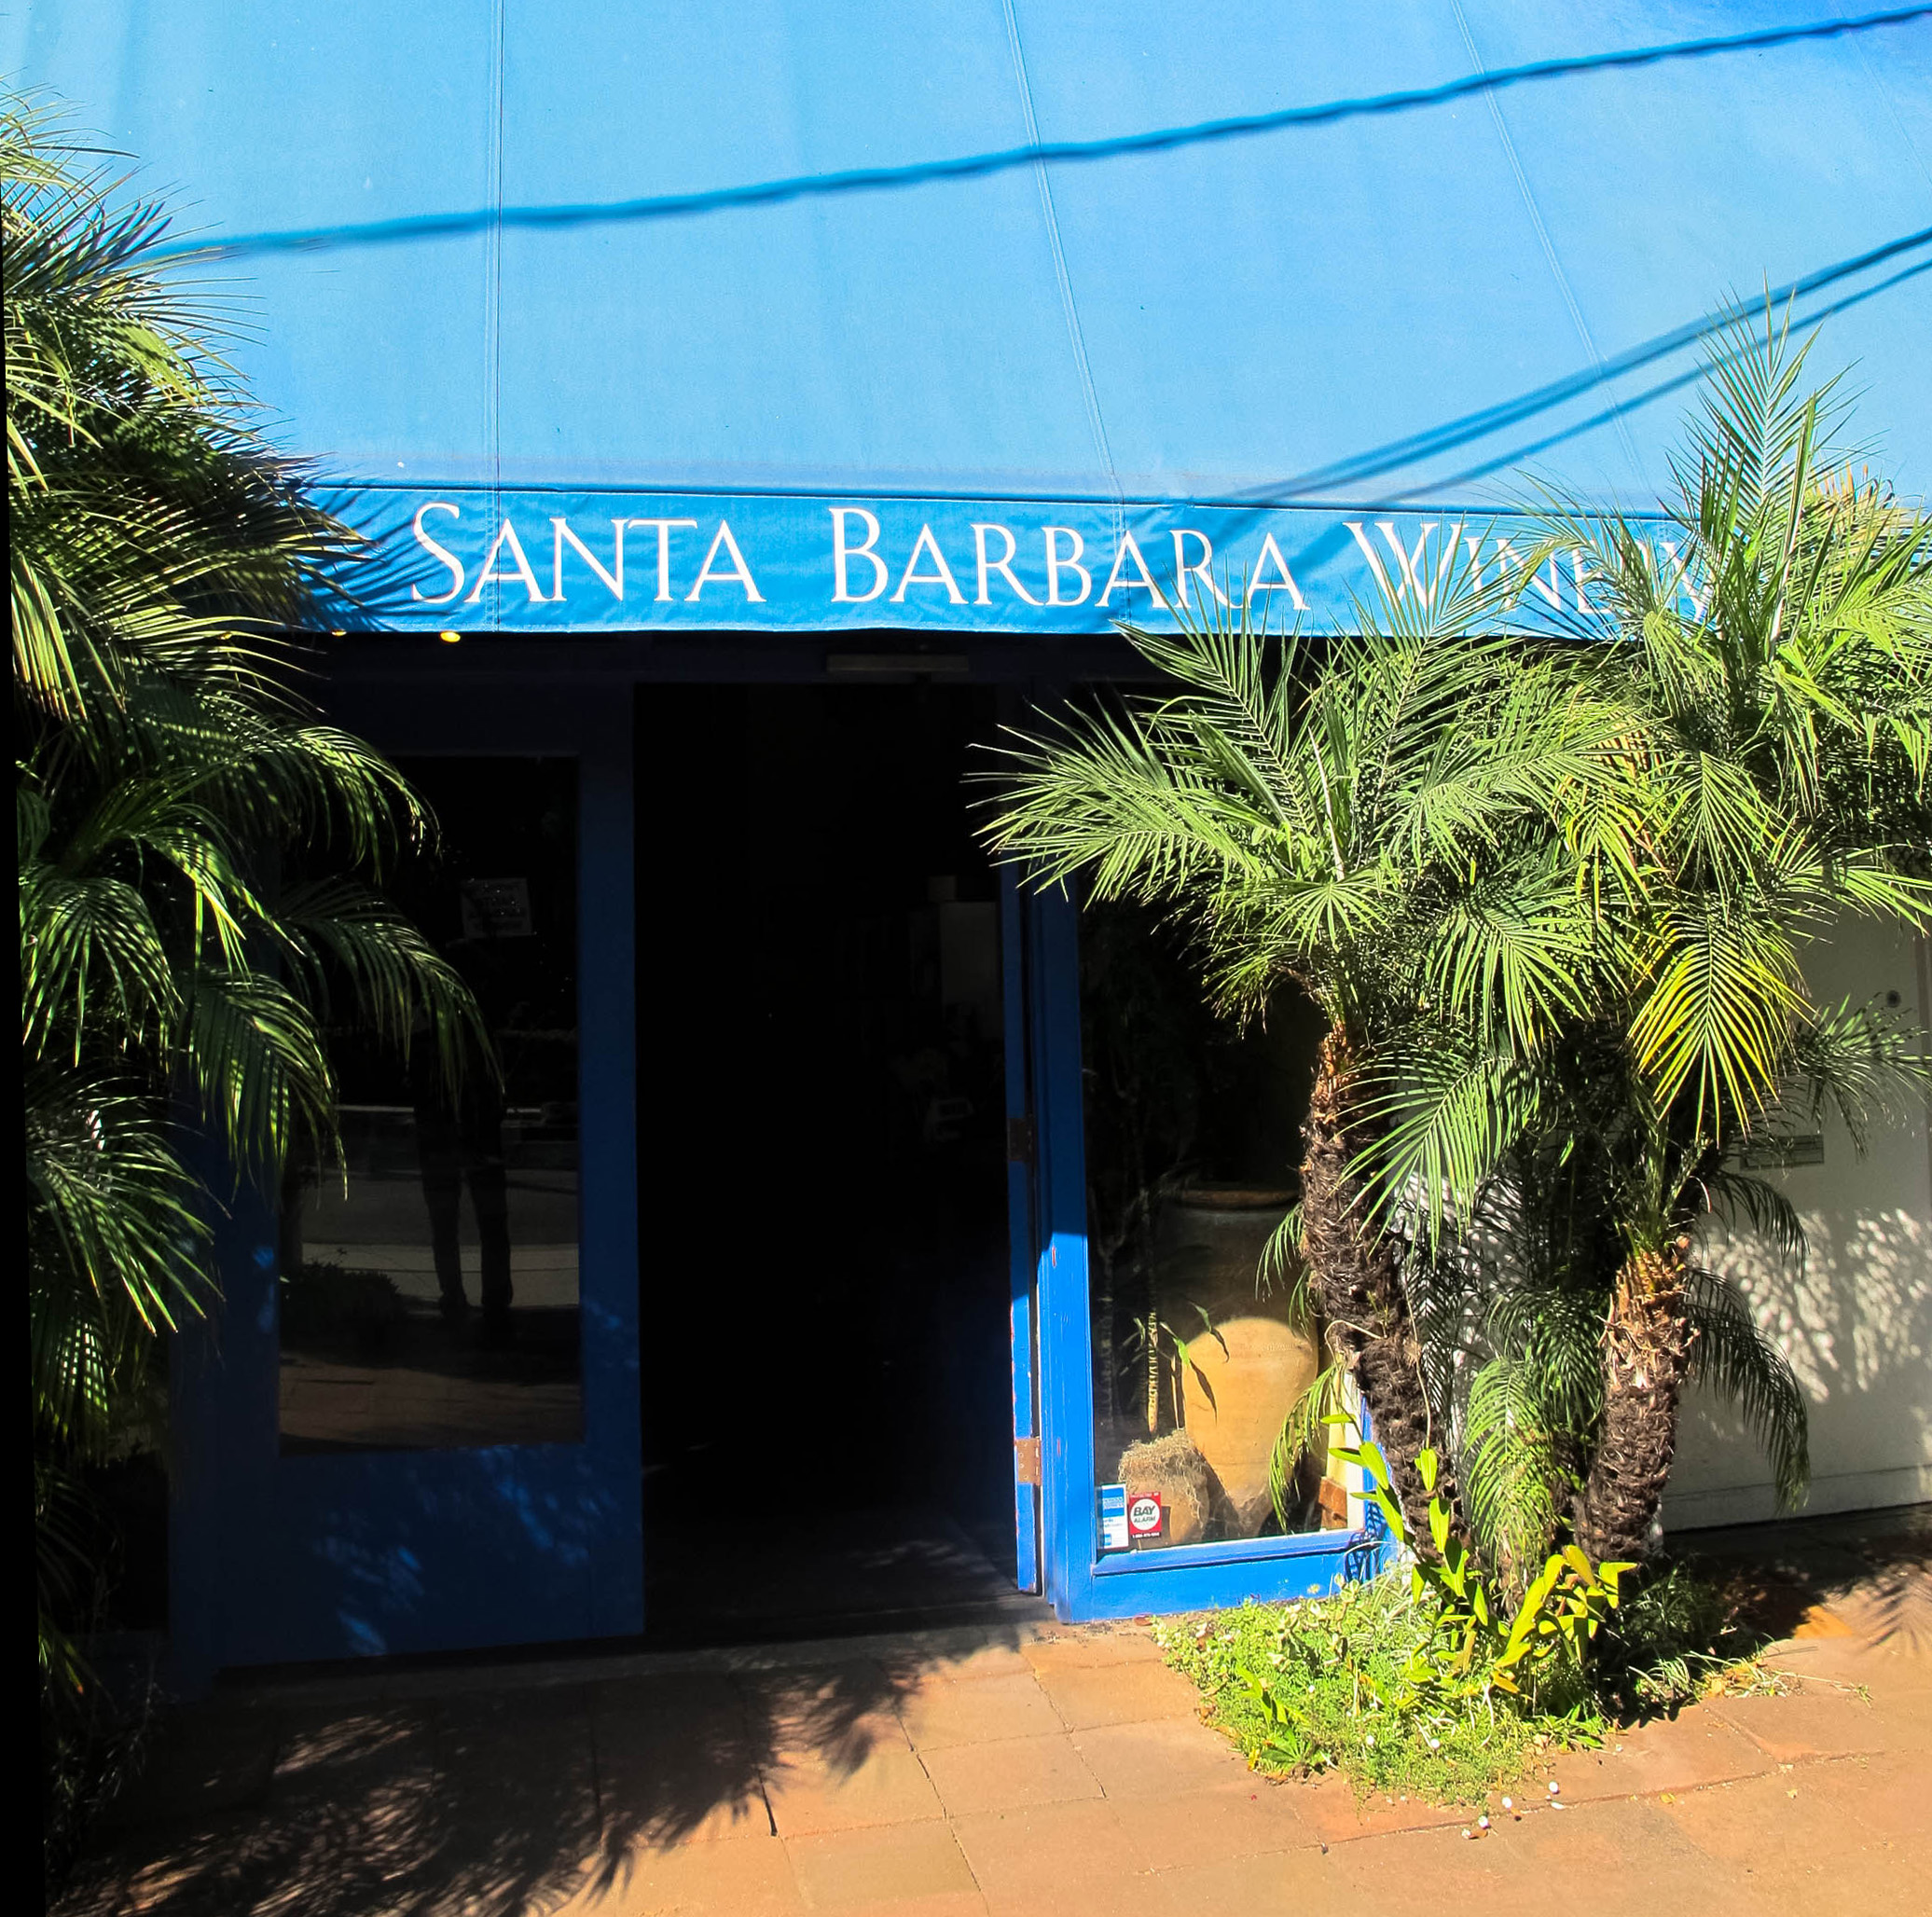 Santa Barbara Winery